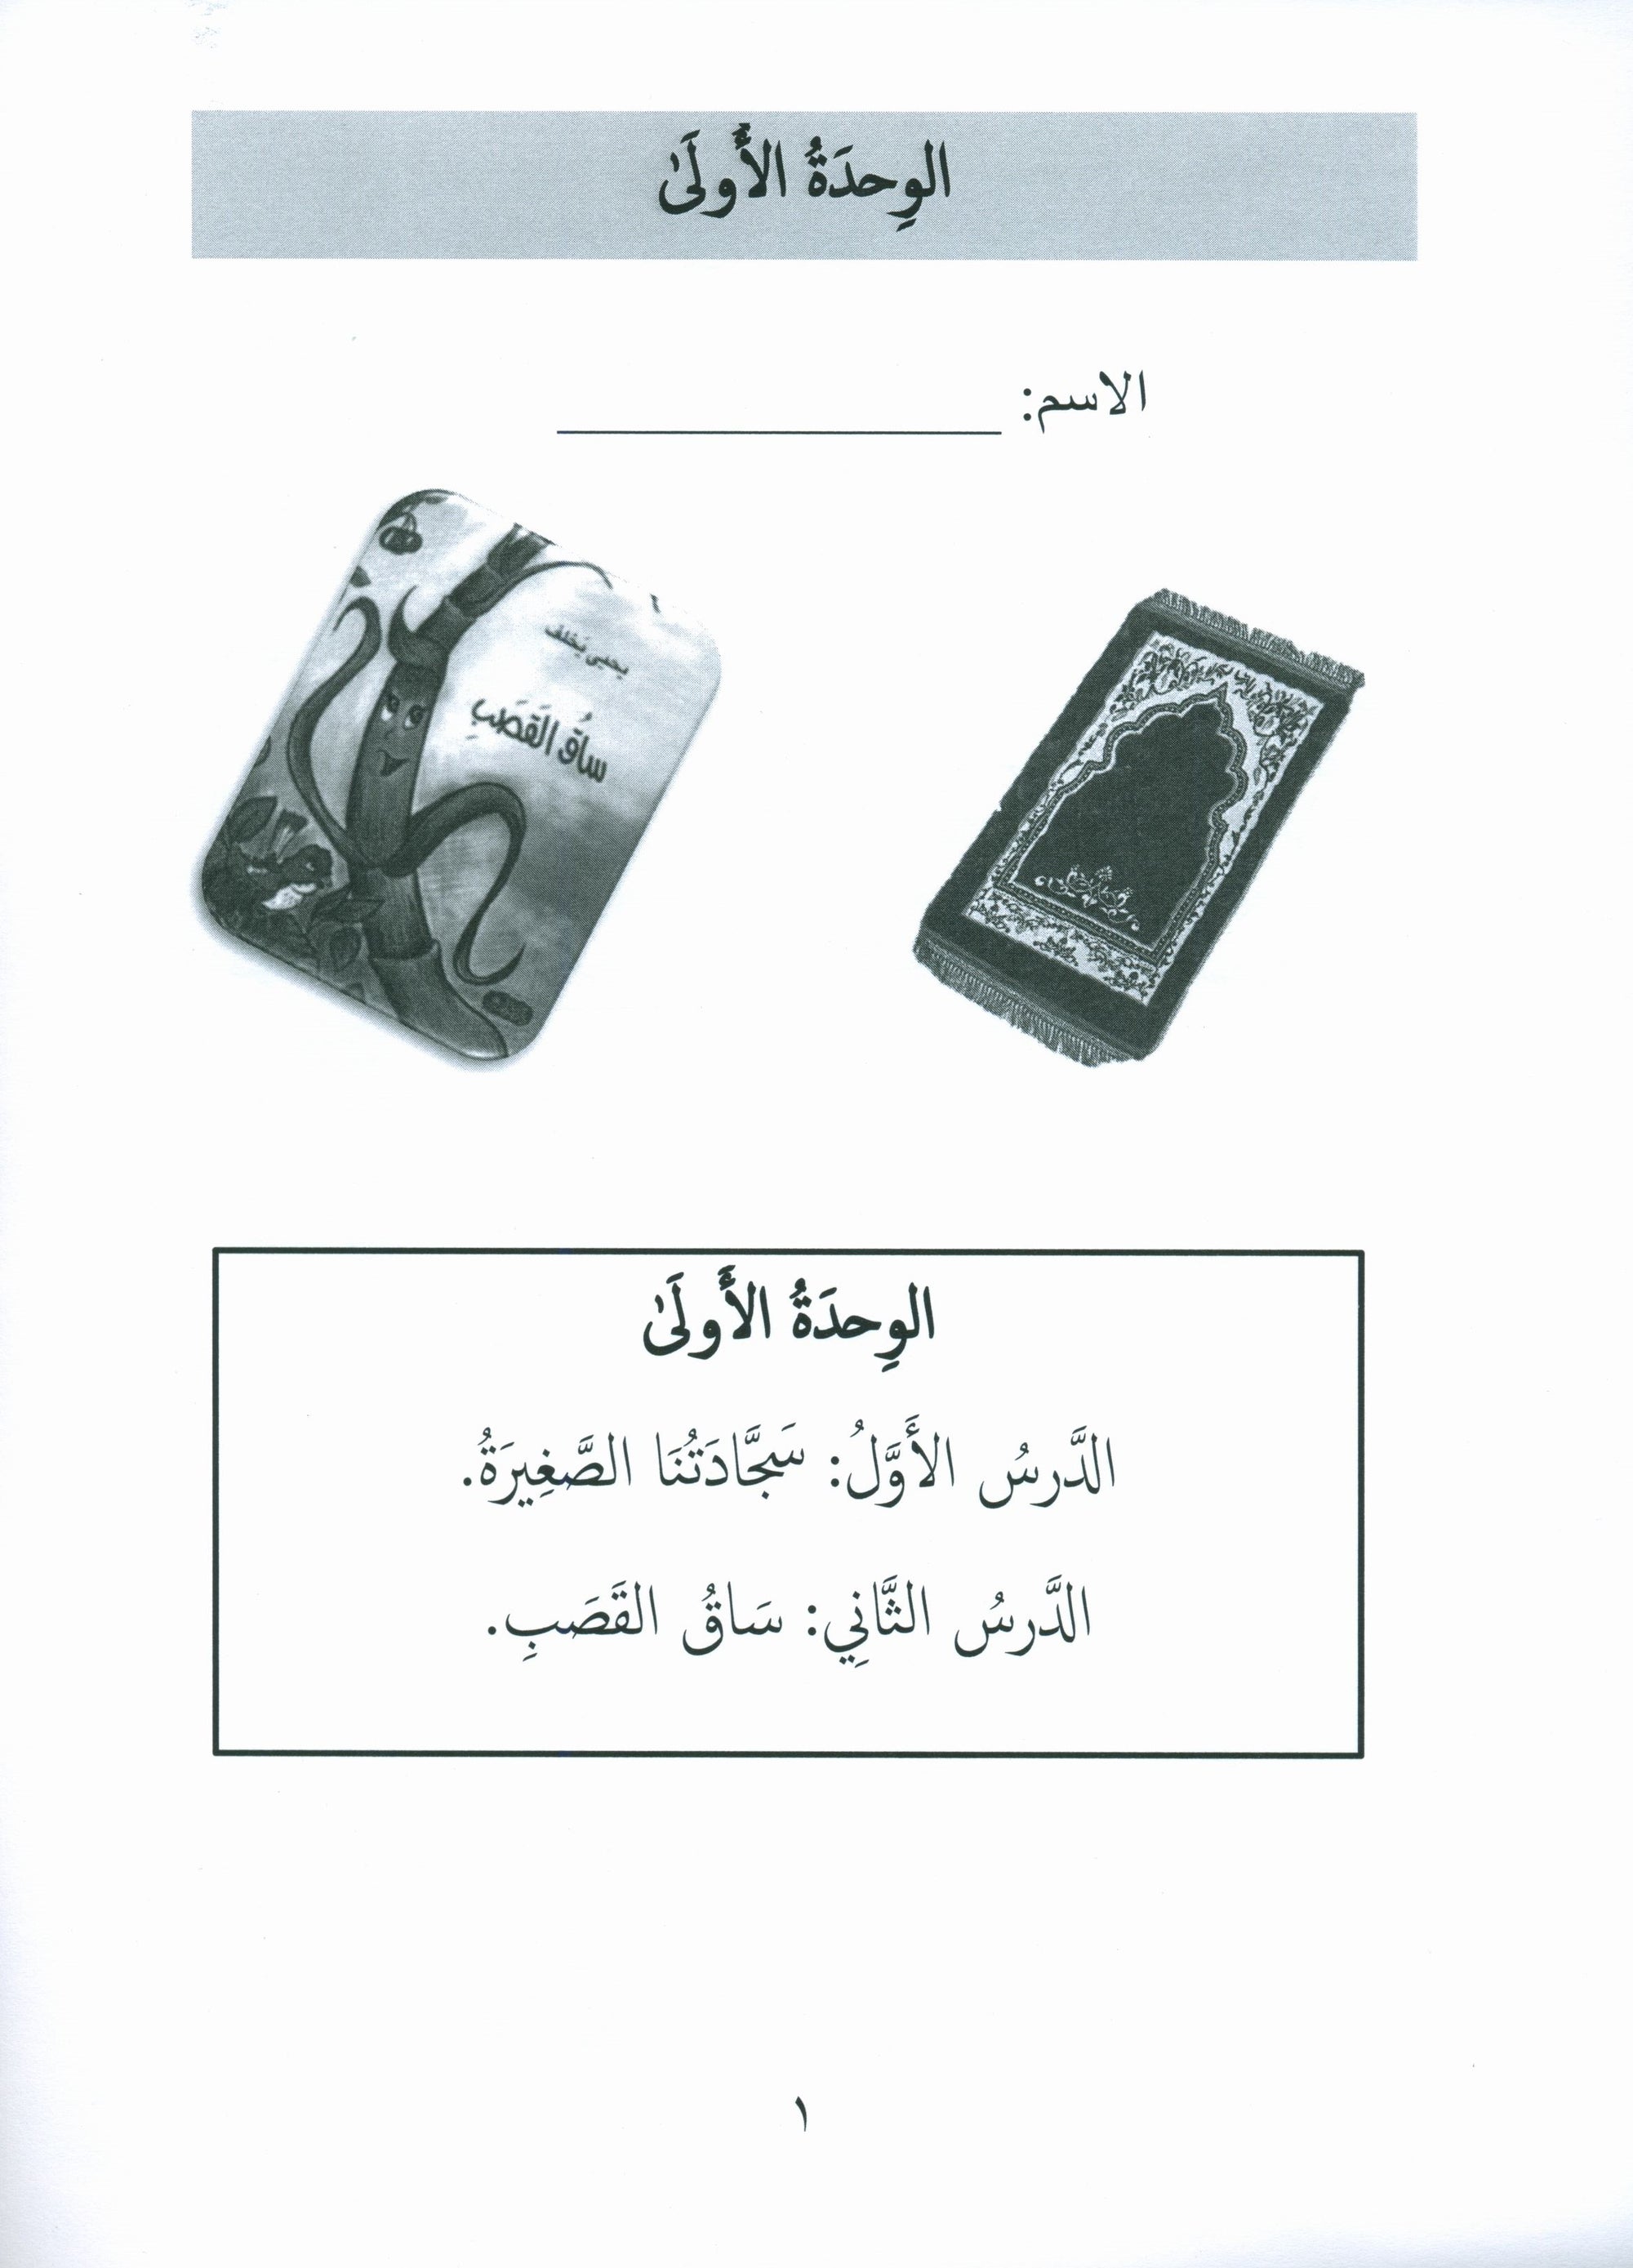 Gems of Arabic Assessment Level 7